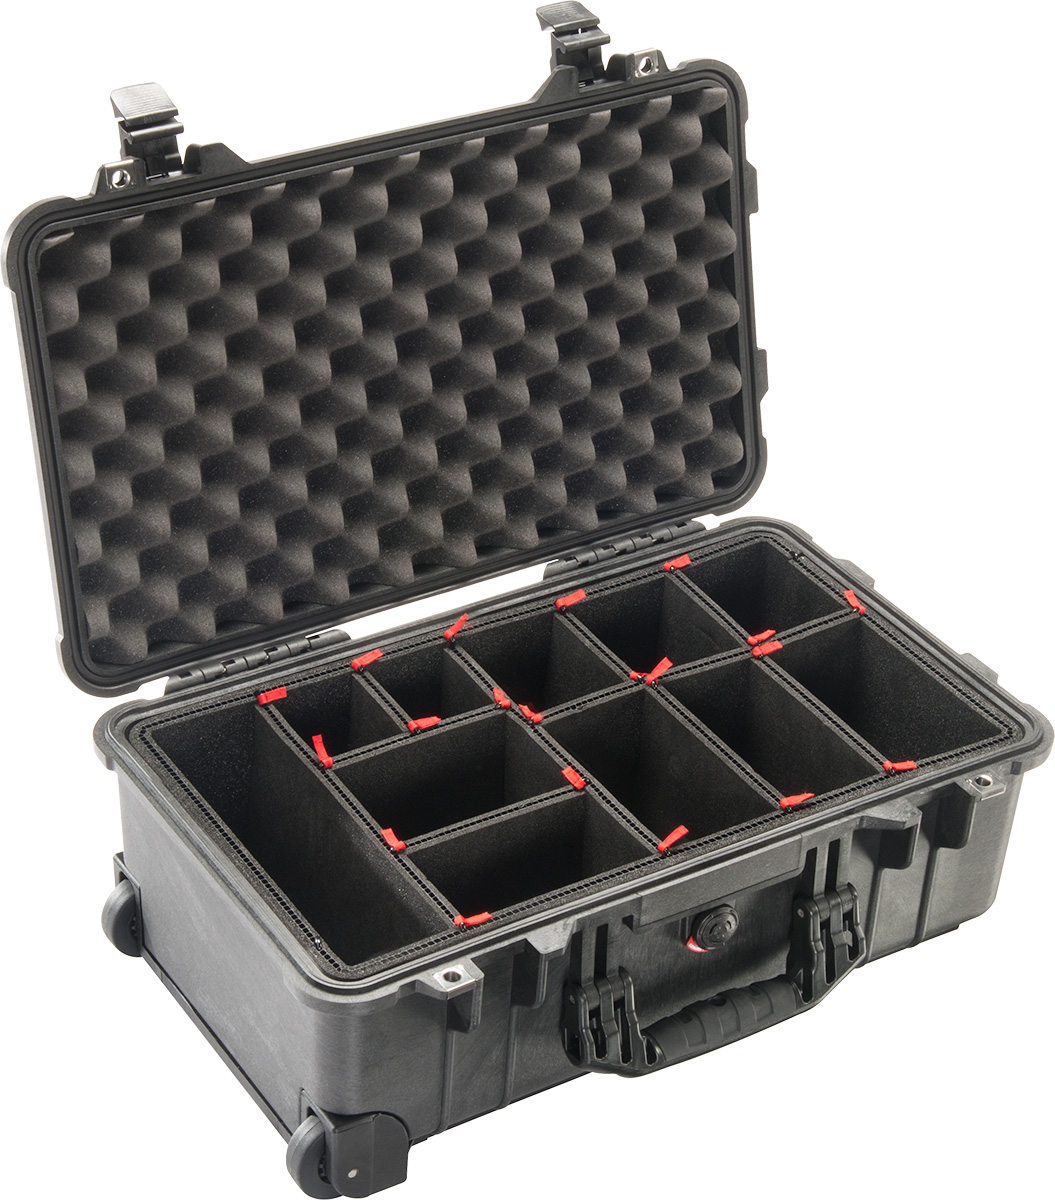 Black Peli 1525 Air Case with TrekPak for Camera